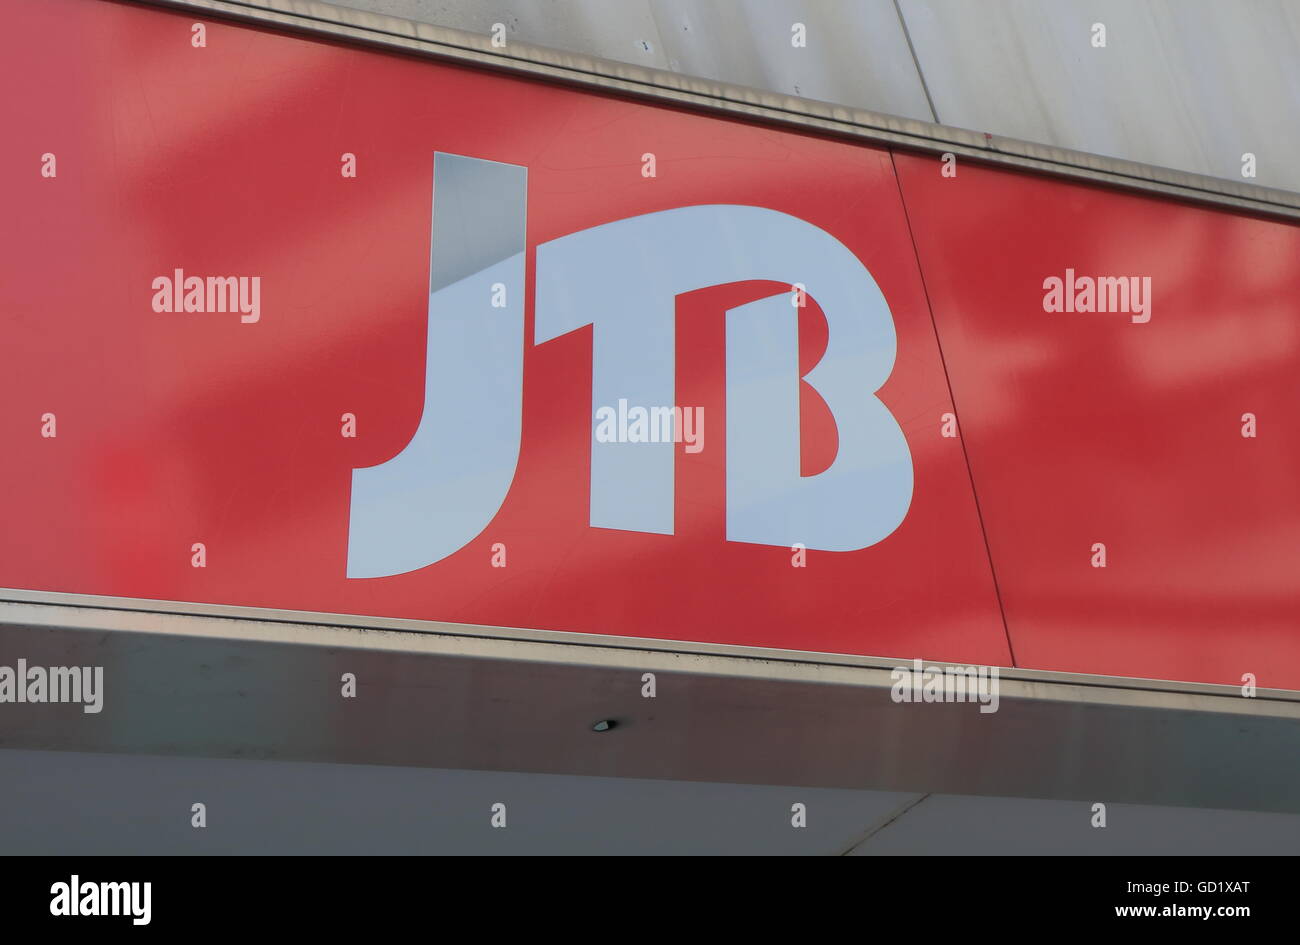 JTB Reisebüro. Das größte Reisebüro in Japan und einer der größten in der Welt mit Niederlassungen auf der ganzen Welt. Stockfoto